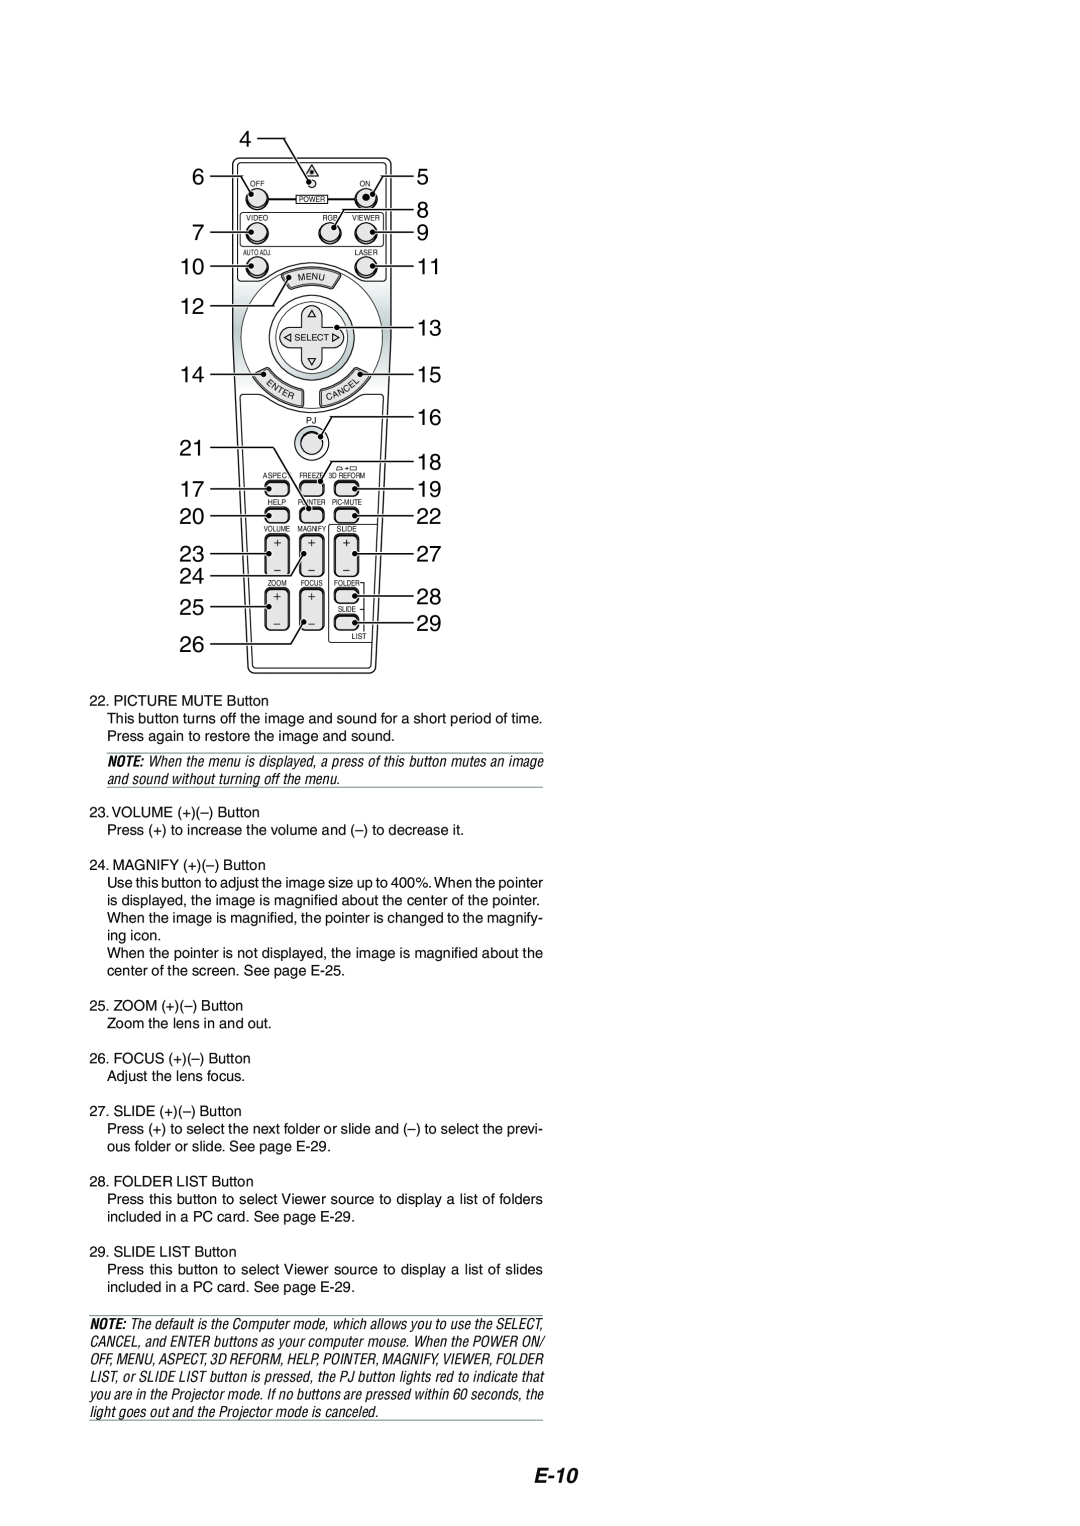 NEC MT1065/MT1060 user manual E-10 